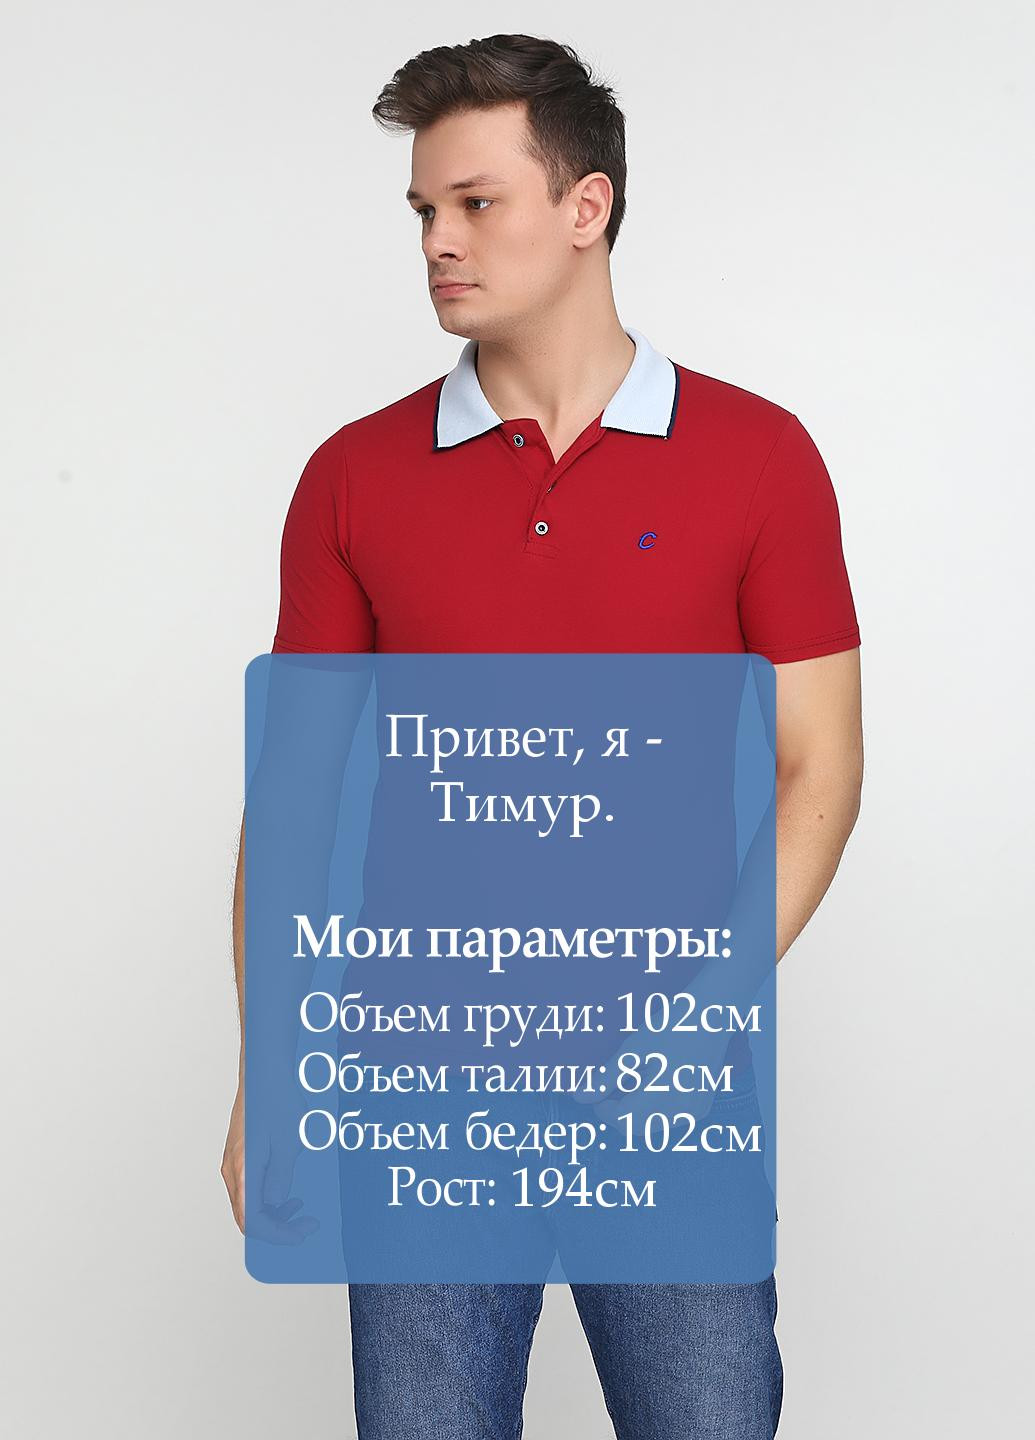 Вишневая футболка-поло для мужчин Chiarotex с логотипом